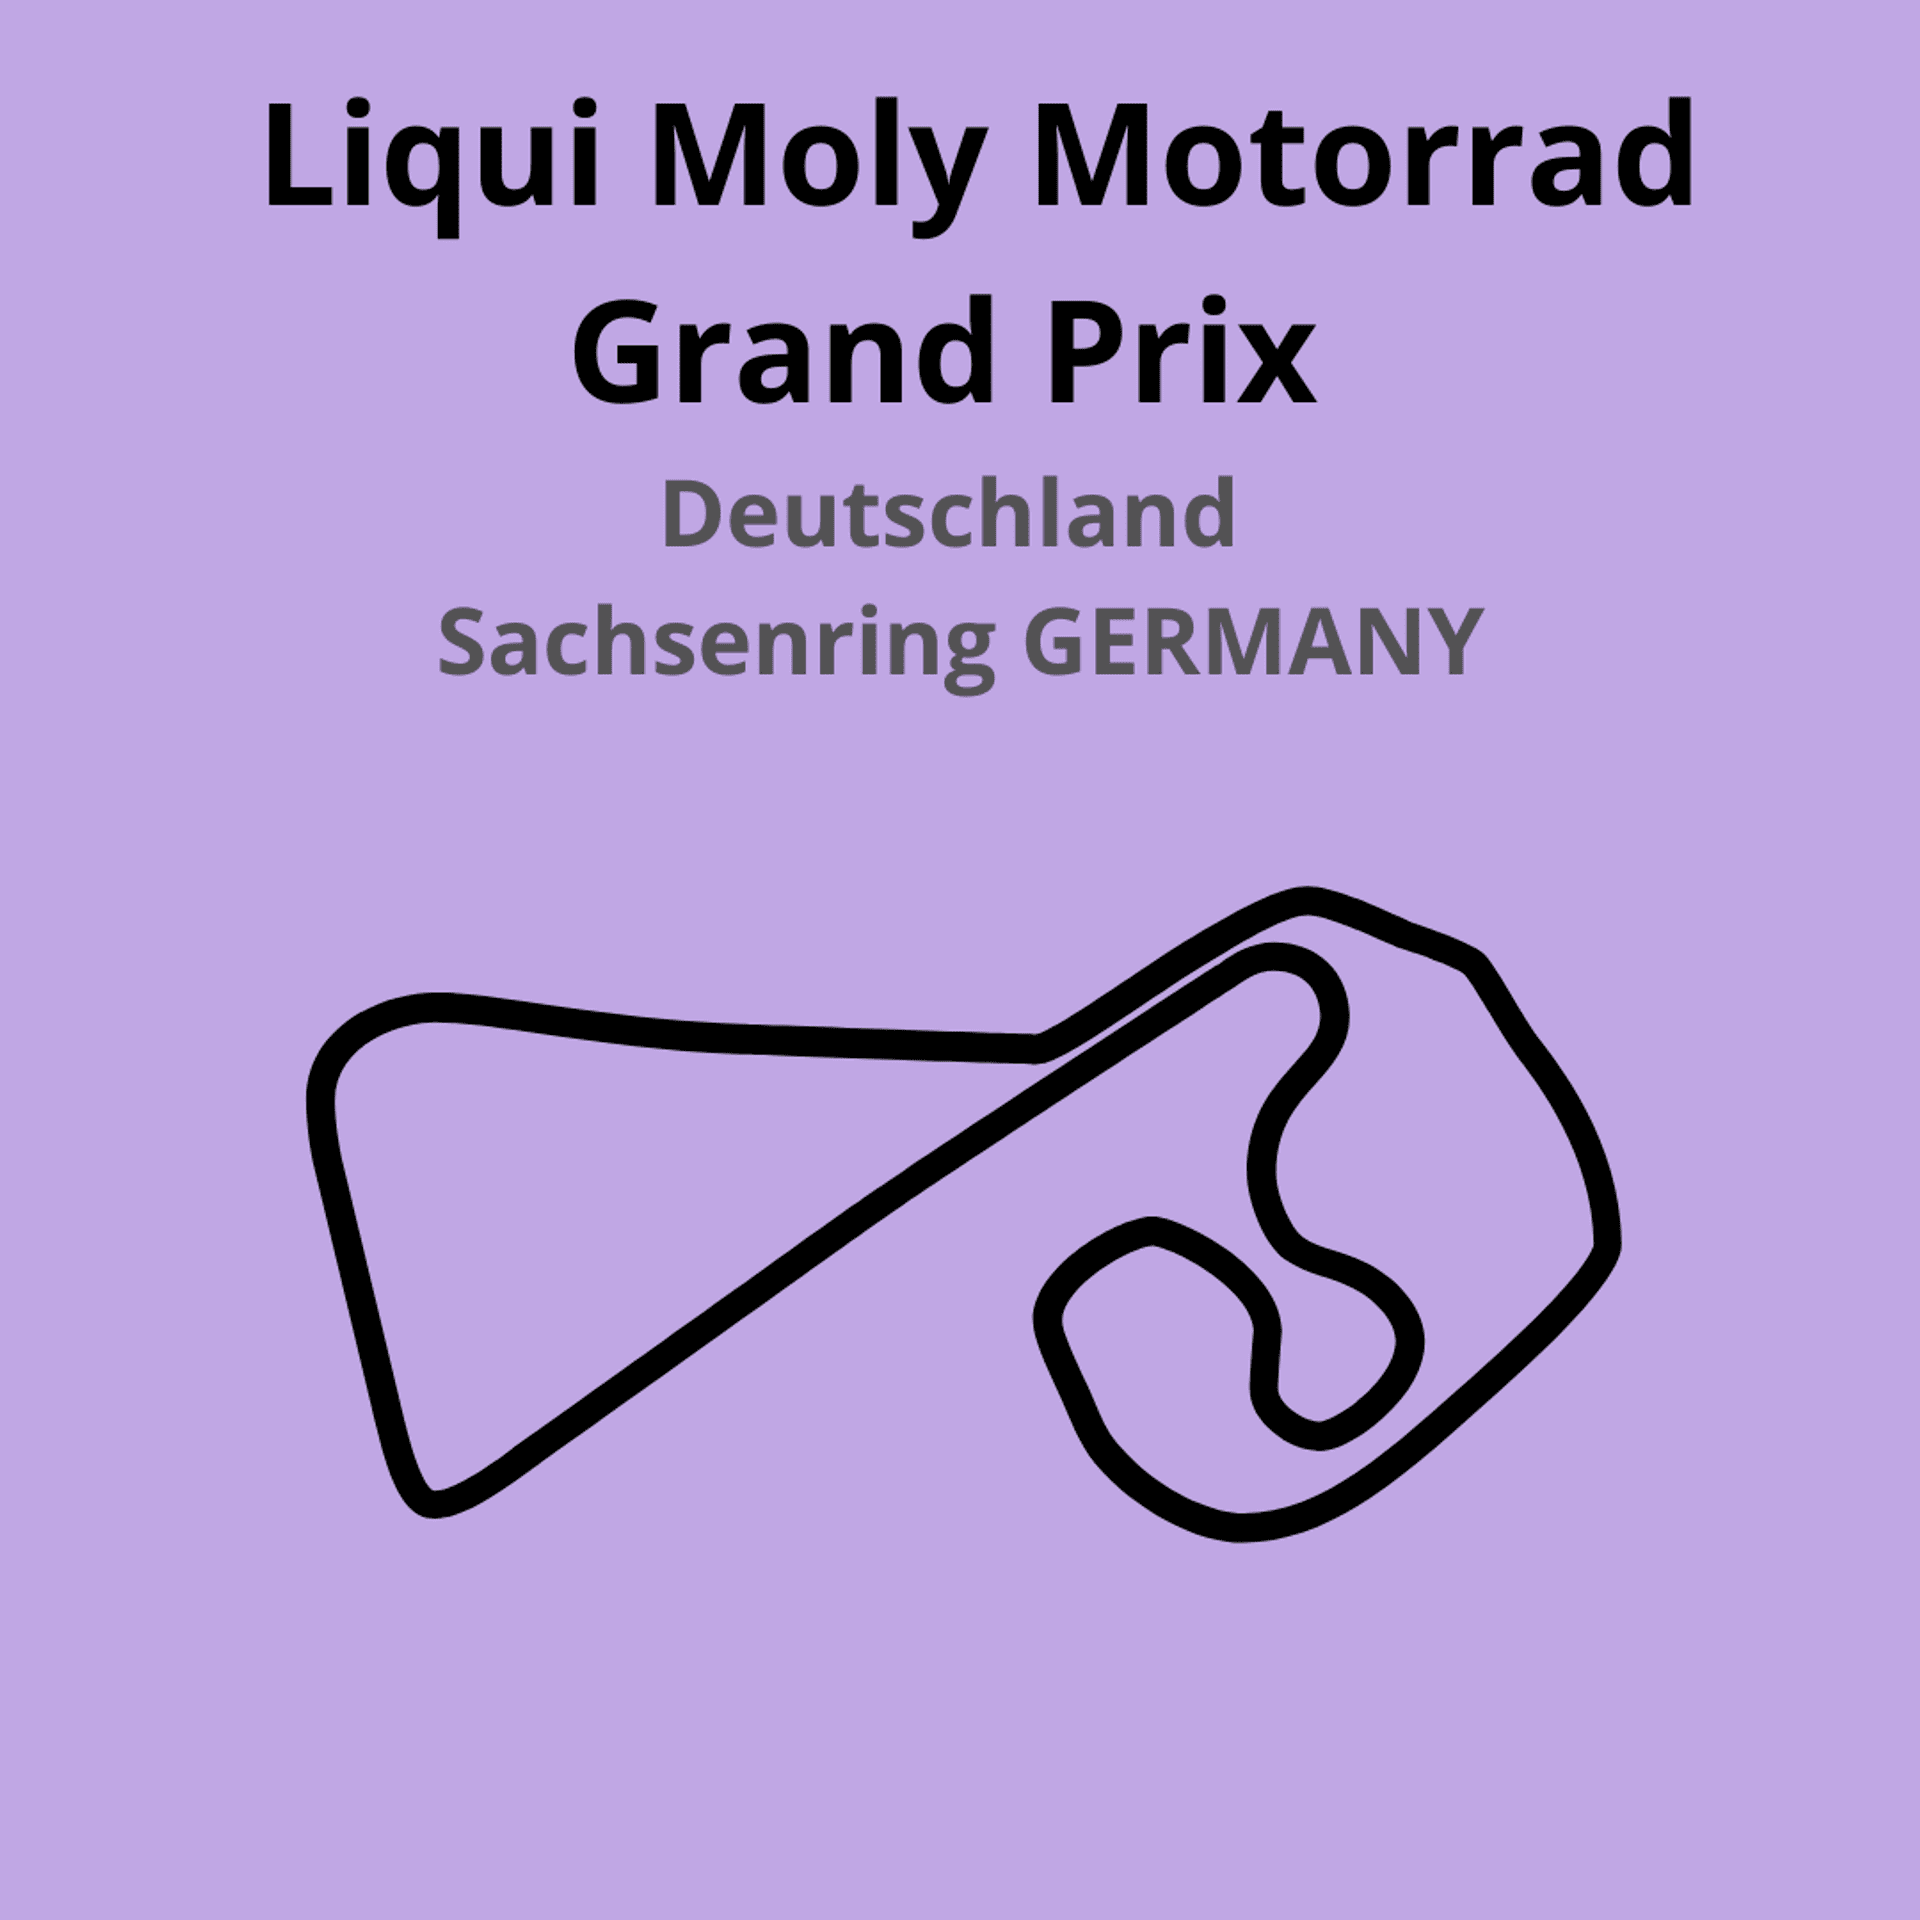 Liqui Moly Motorrad Grand Prix. Scopri tutte le gare del moto mondiale 2021.Le caratteristiche di ogni circuito, i record e difficoltà.Segui insieme a noi tutte le gare di Tony Arbolino nella sua nuova avventura in Moto2